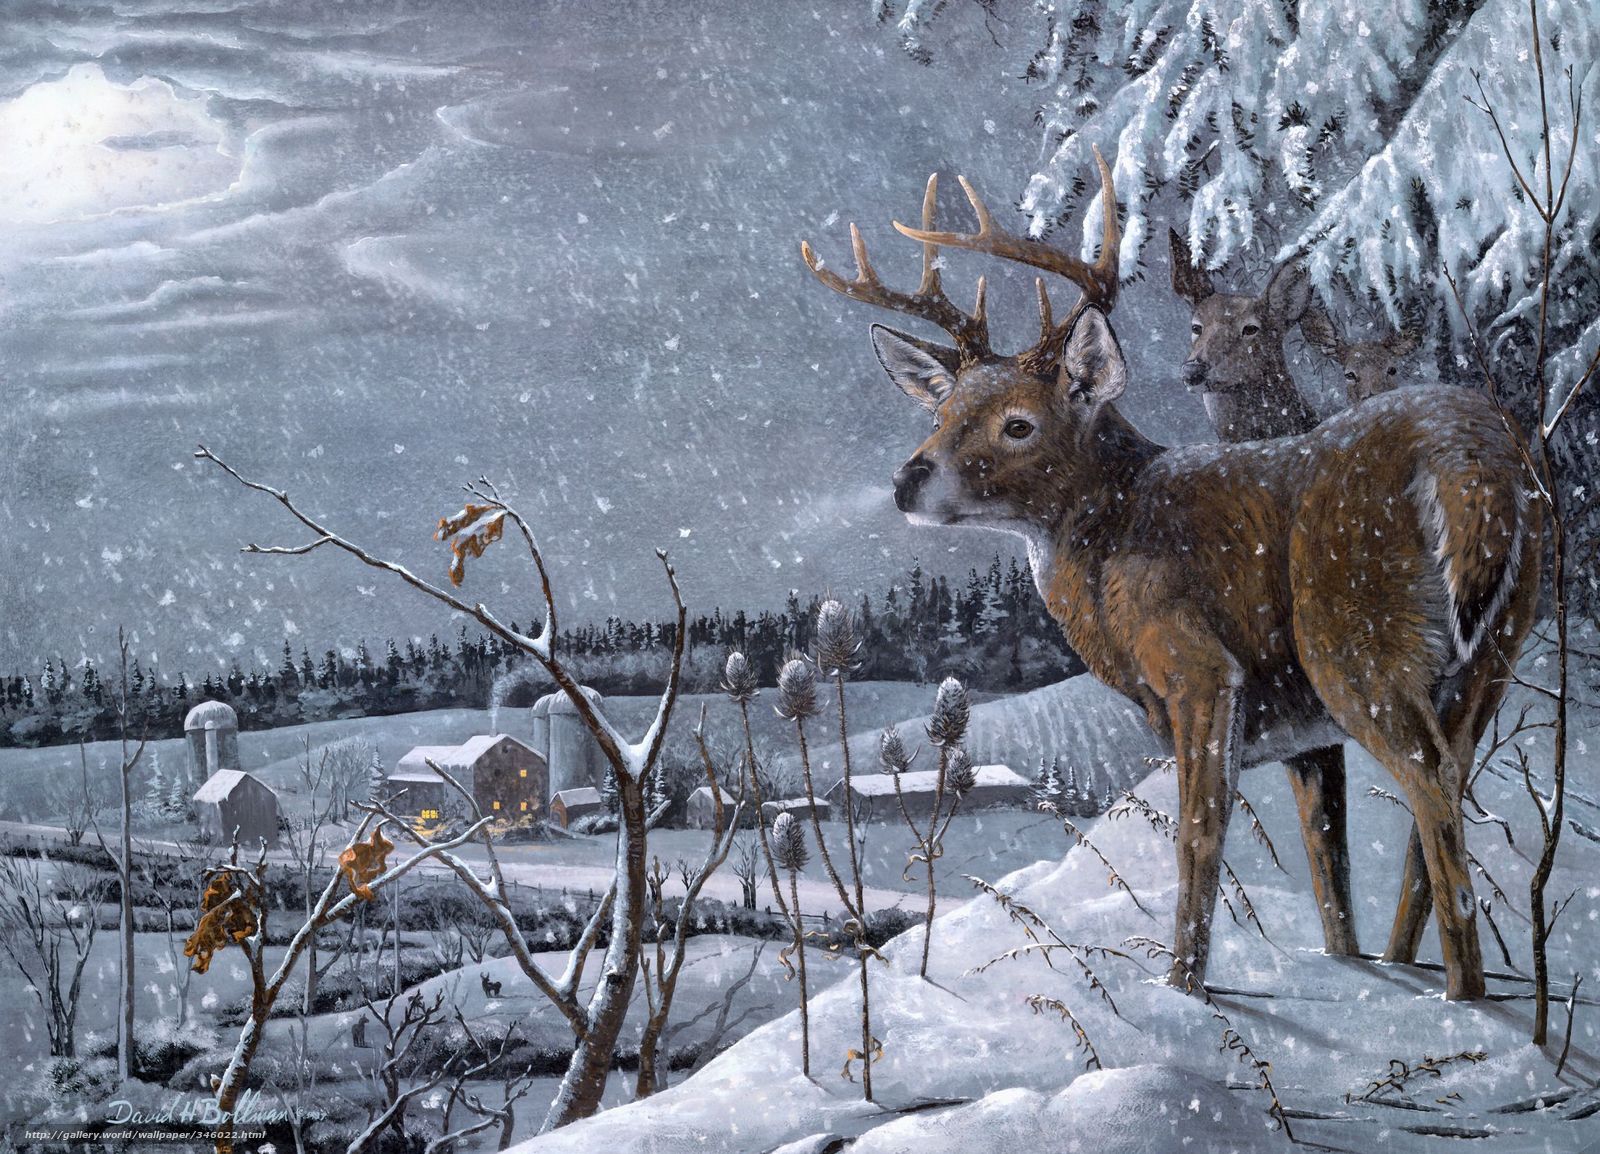 A painting of deer in the snow - Deer